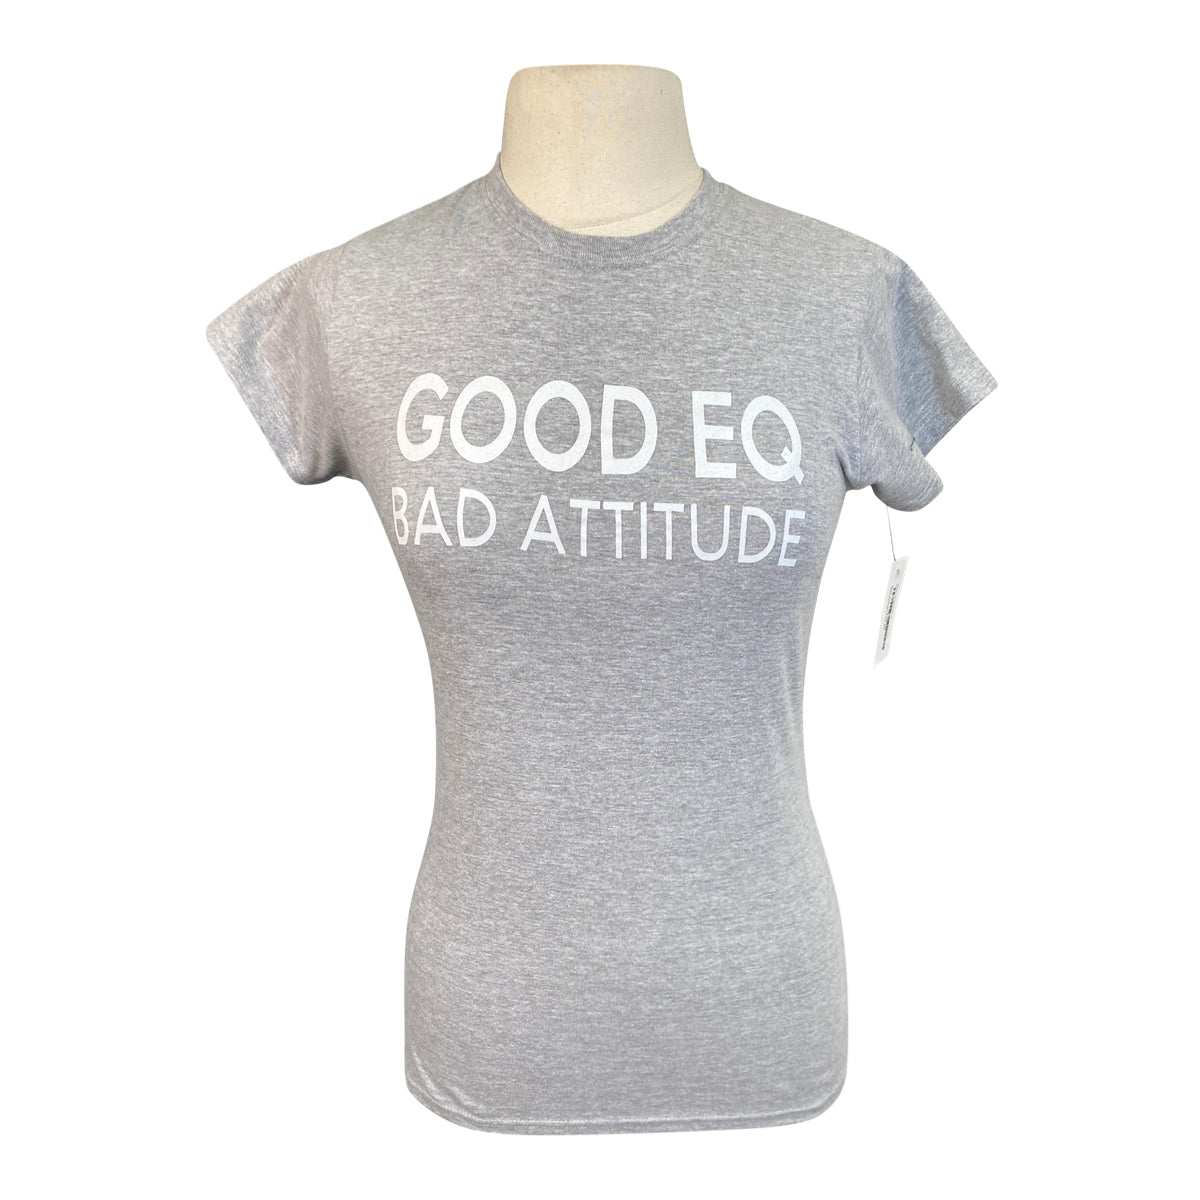 'Good Eq Bad Attitude' Tee in Grey